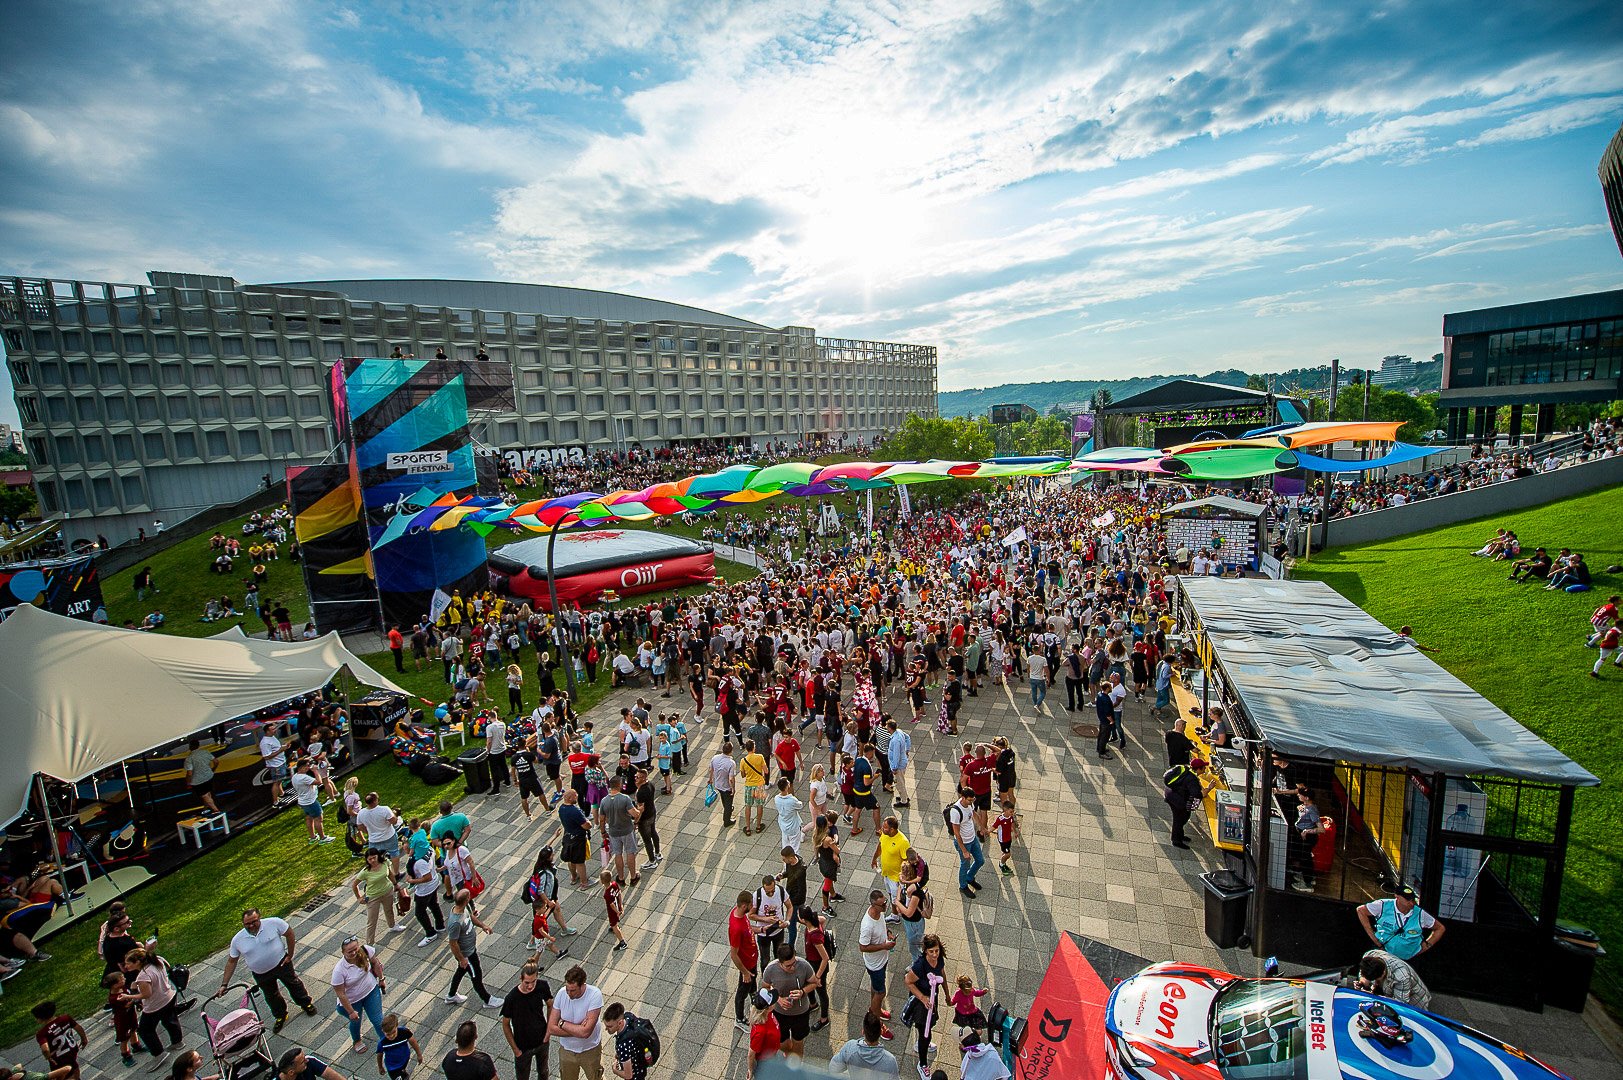 Restricții de circulație în Cluj Napoca, pe perioada Sports Festival